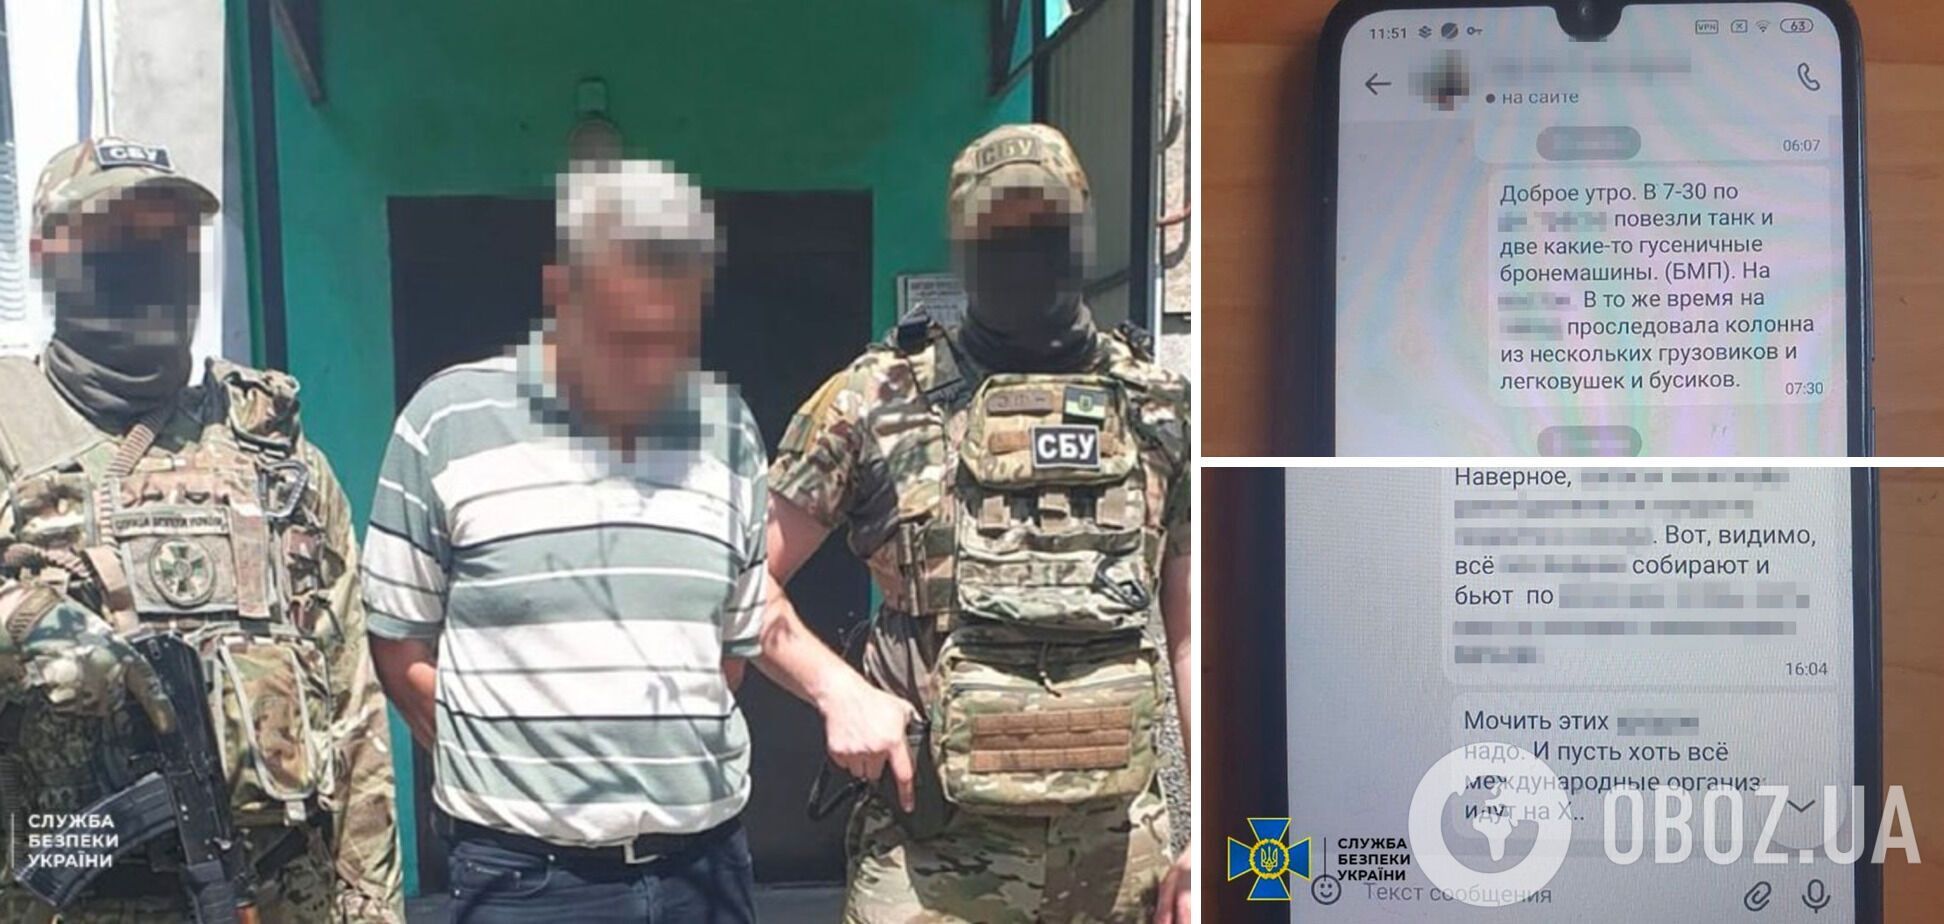 СБУ задержала информатора РФ, который 'охотился' за позициями украинской артиллерии под Авдеевкой. Фото